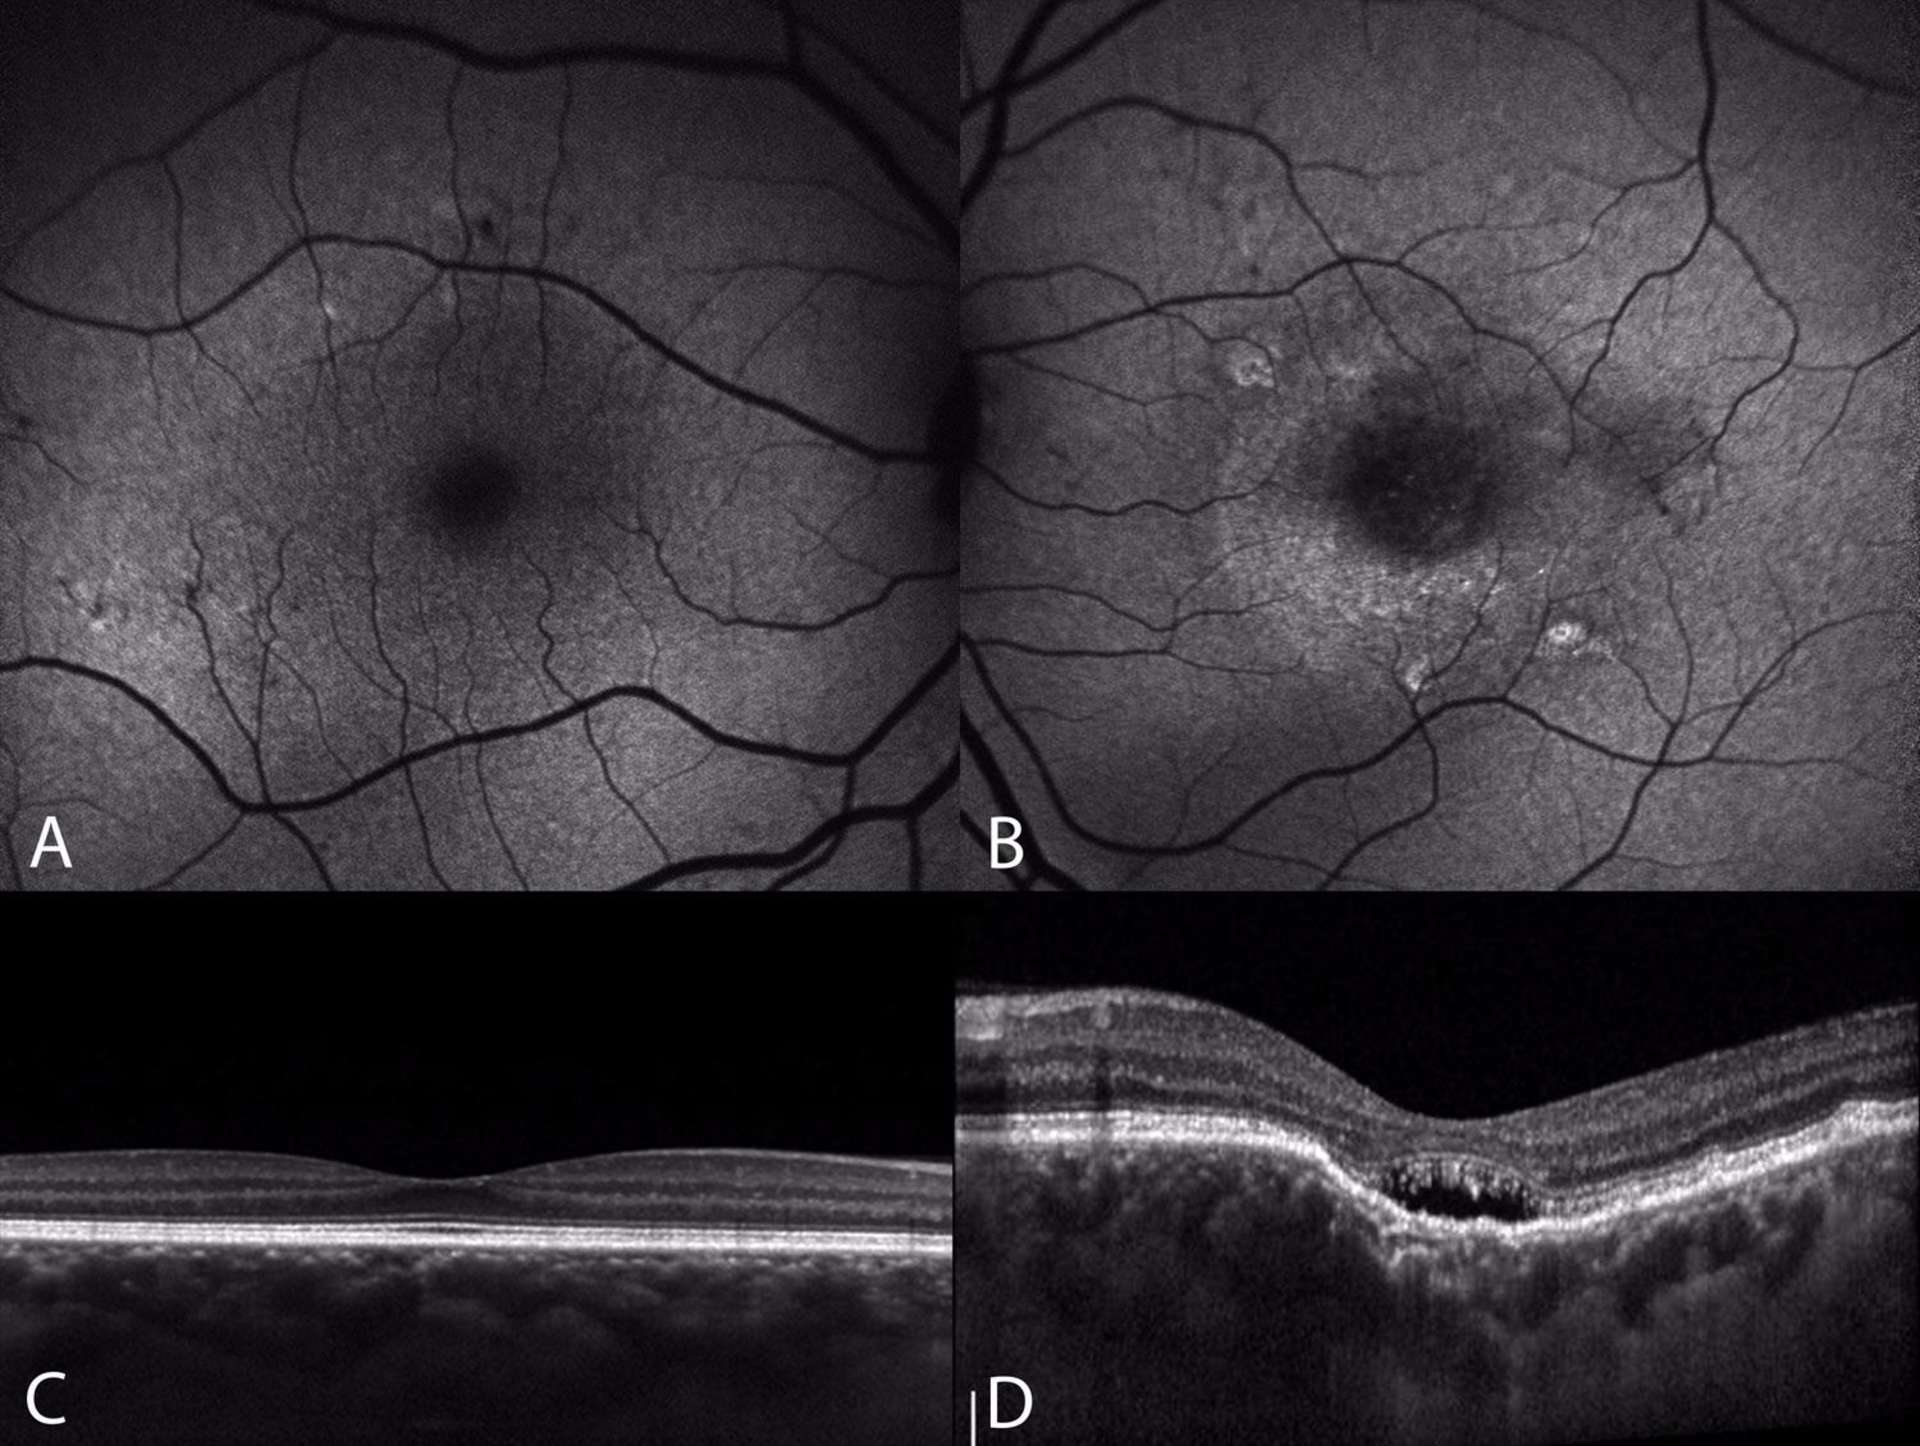 Figure 3. Clichés en autofluorescence (A, B) et OCT en mode EDI (C, D) d’une patiente de 55 ans avec une excavation choroïdienne focale fovéolaire au niveau de l’œil gauche. Au niveau de l’œil droit, la patiente présente une pachychoroïde à plus de 500 microns en fovéolaire associée à quelques AEP infracliniques visibles sur le cliché en autofluorescence. Au niveau de l’œil gauche, le cliché en autofluorescence met en évidence une hyper-autofluorescence centrale qui évoque un DSR chronique. Sur l’OCT EDI on note une excavation choroïdienne focale centrale non conforme, avec interposition d’un espace hyporéflectif entre les photorécepteurs et l’EPR (D). 
